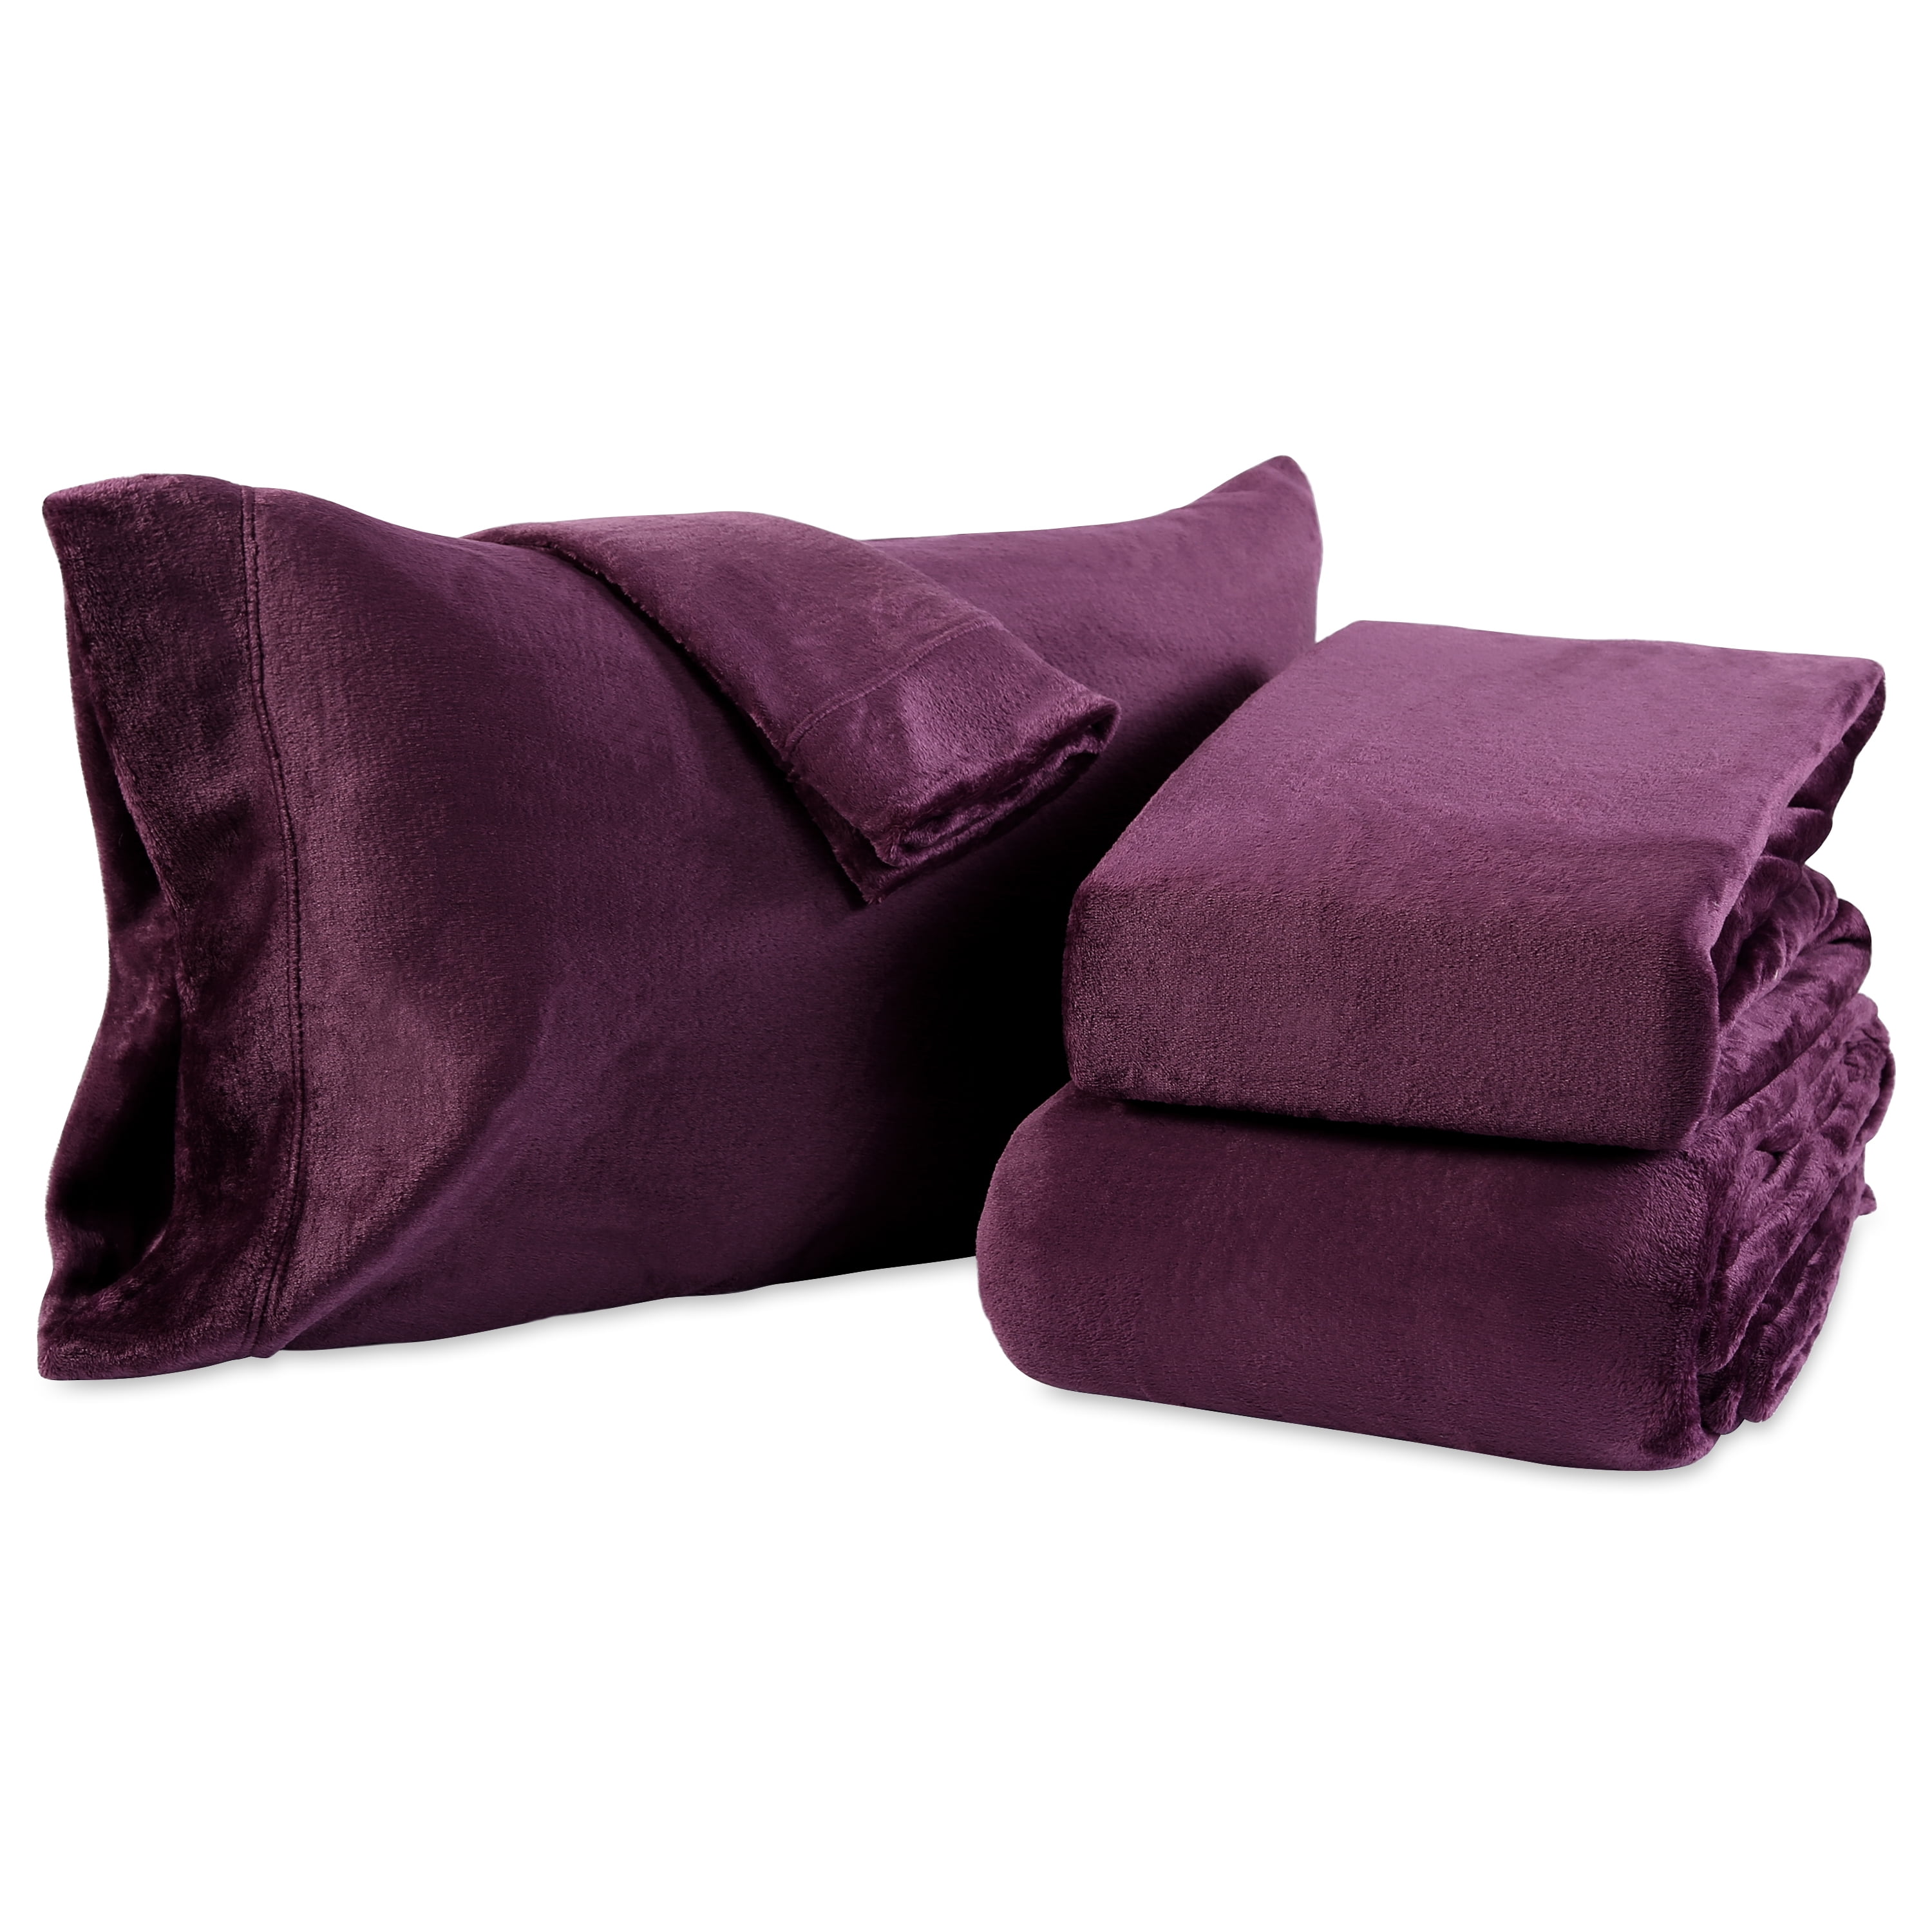 Berkshire Blanket VelvetLoft Ultra Soft Luxury Plush Blanket King Eggplant 